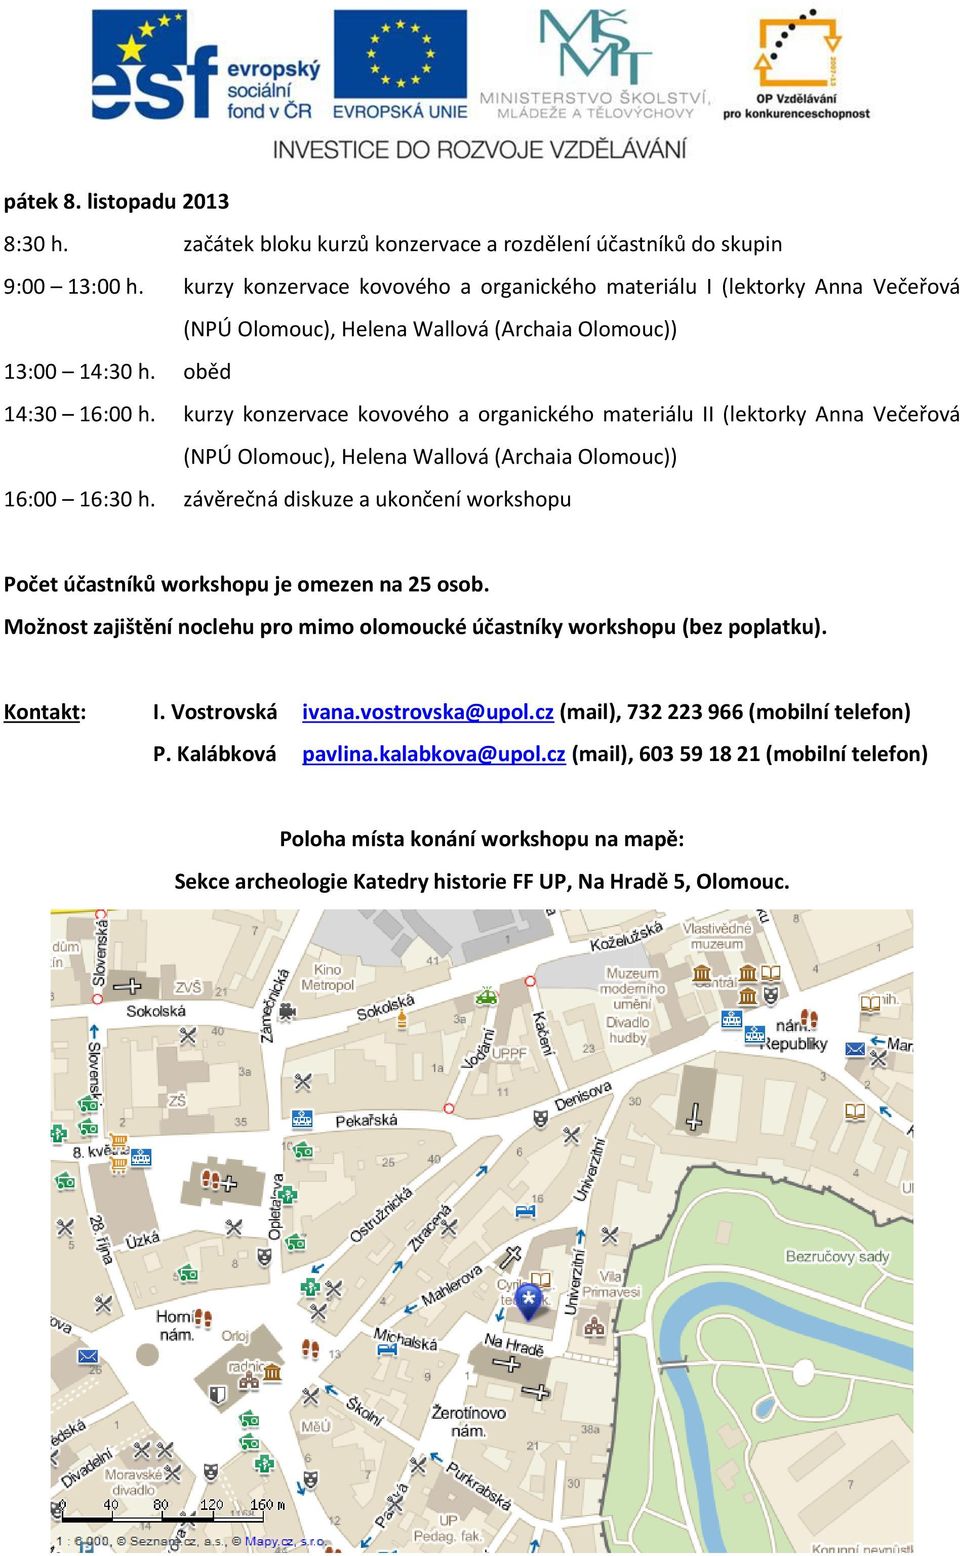 kurzy konzervace kovového a organického materiálu II (lektorky Anna Večeřová (NPÚ Olomouc), Helena Wallová (Archaia Olomouc)) 16:00 16:30 h.